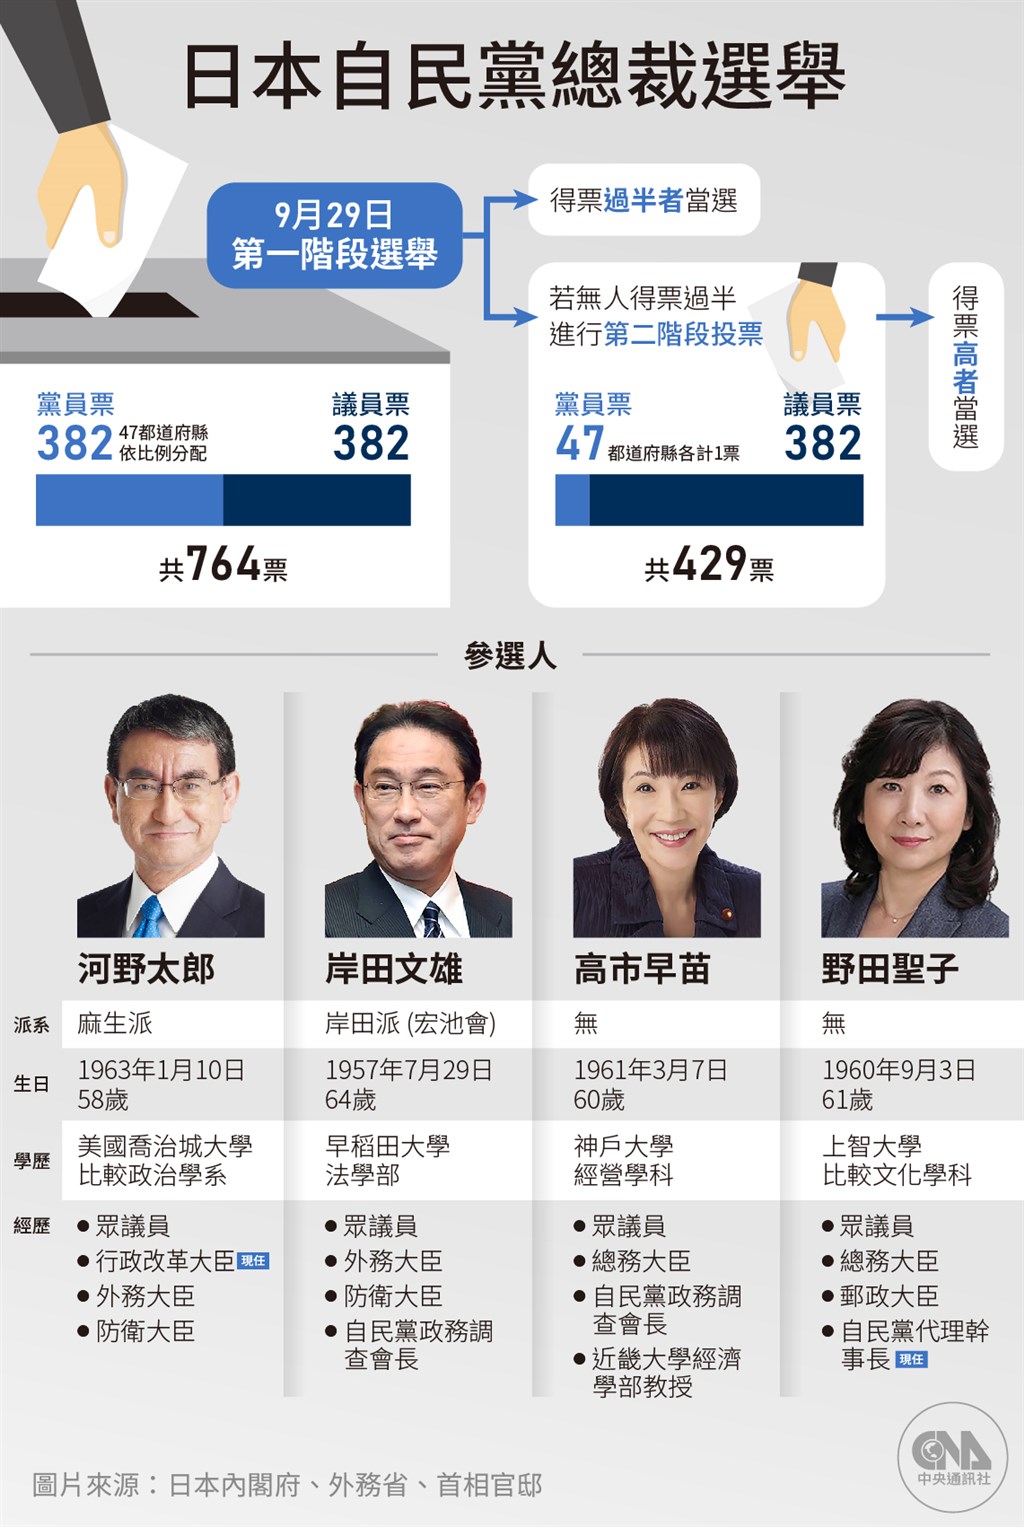 日媒調查自民黨總裁選舉 岸田文雄議員票暫領先 | 國際 | 中央社 CN